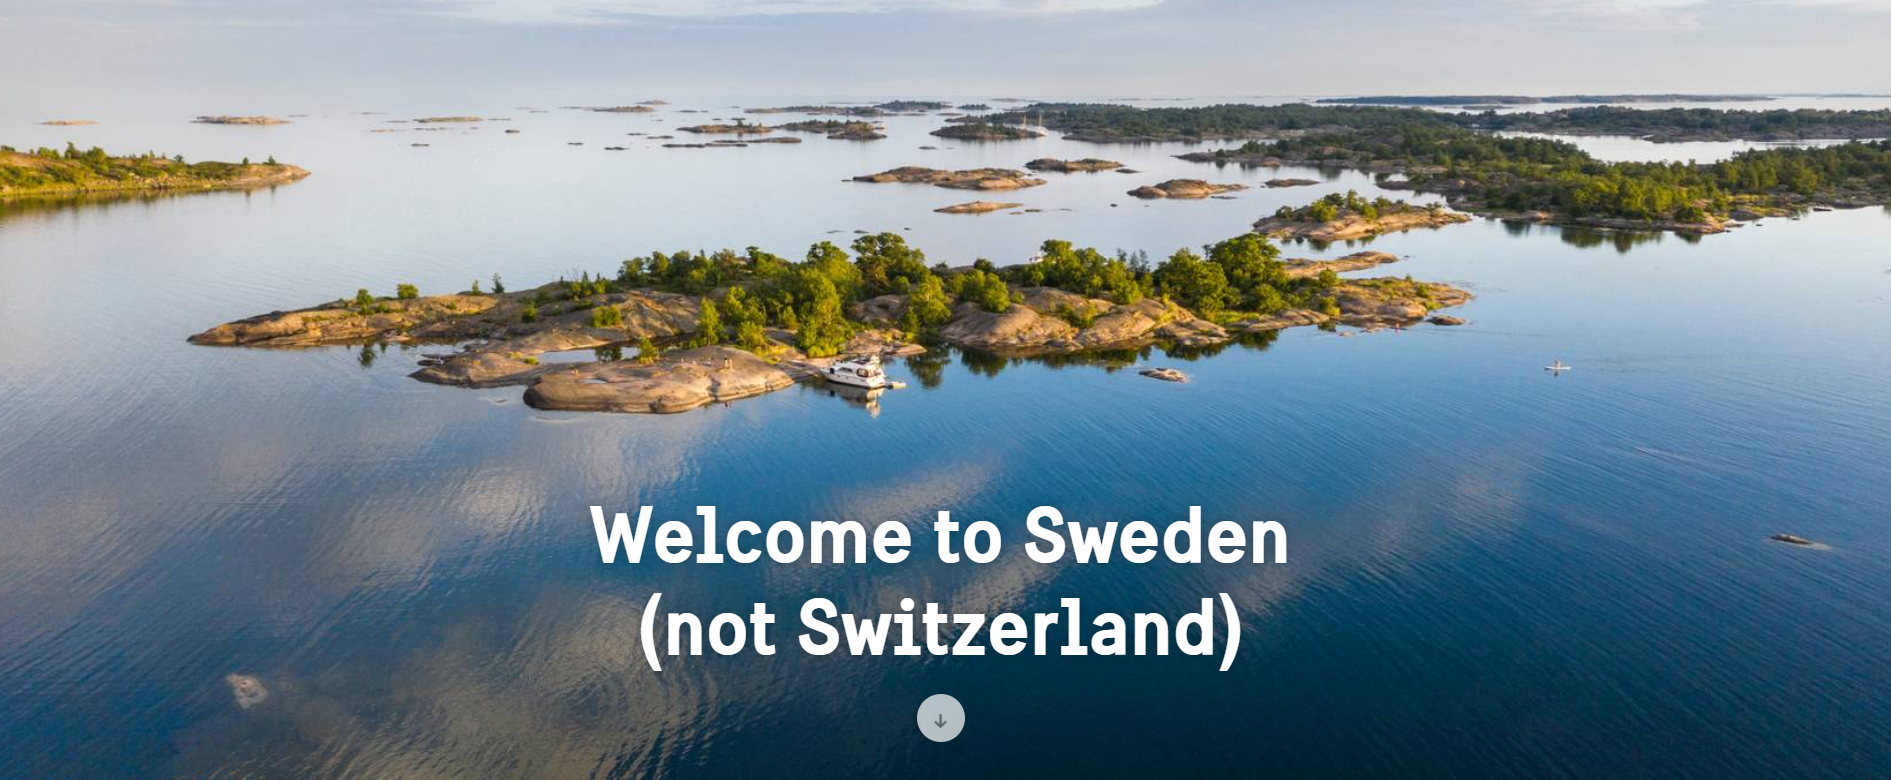 piccola isola svedese fotografata dall alto e scritta VISIT SWEDEN (NOT SWITZERLAND)